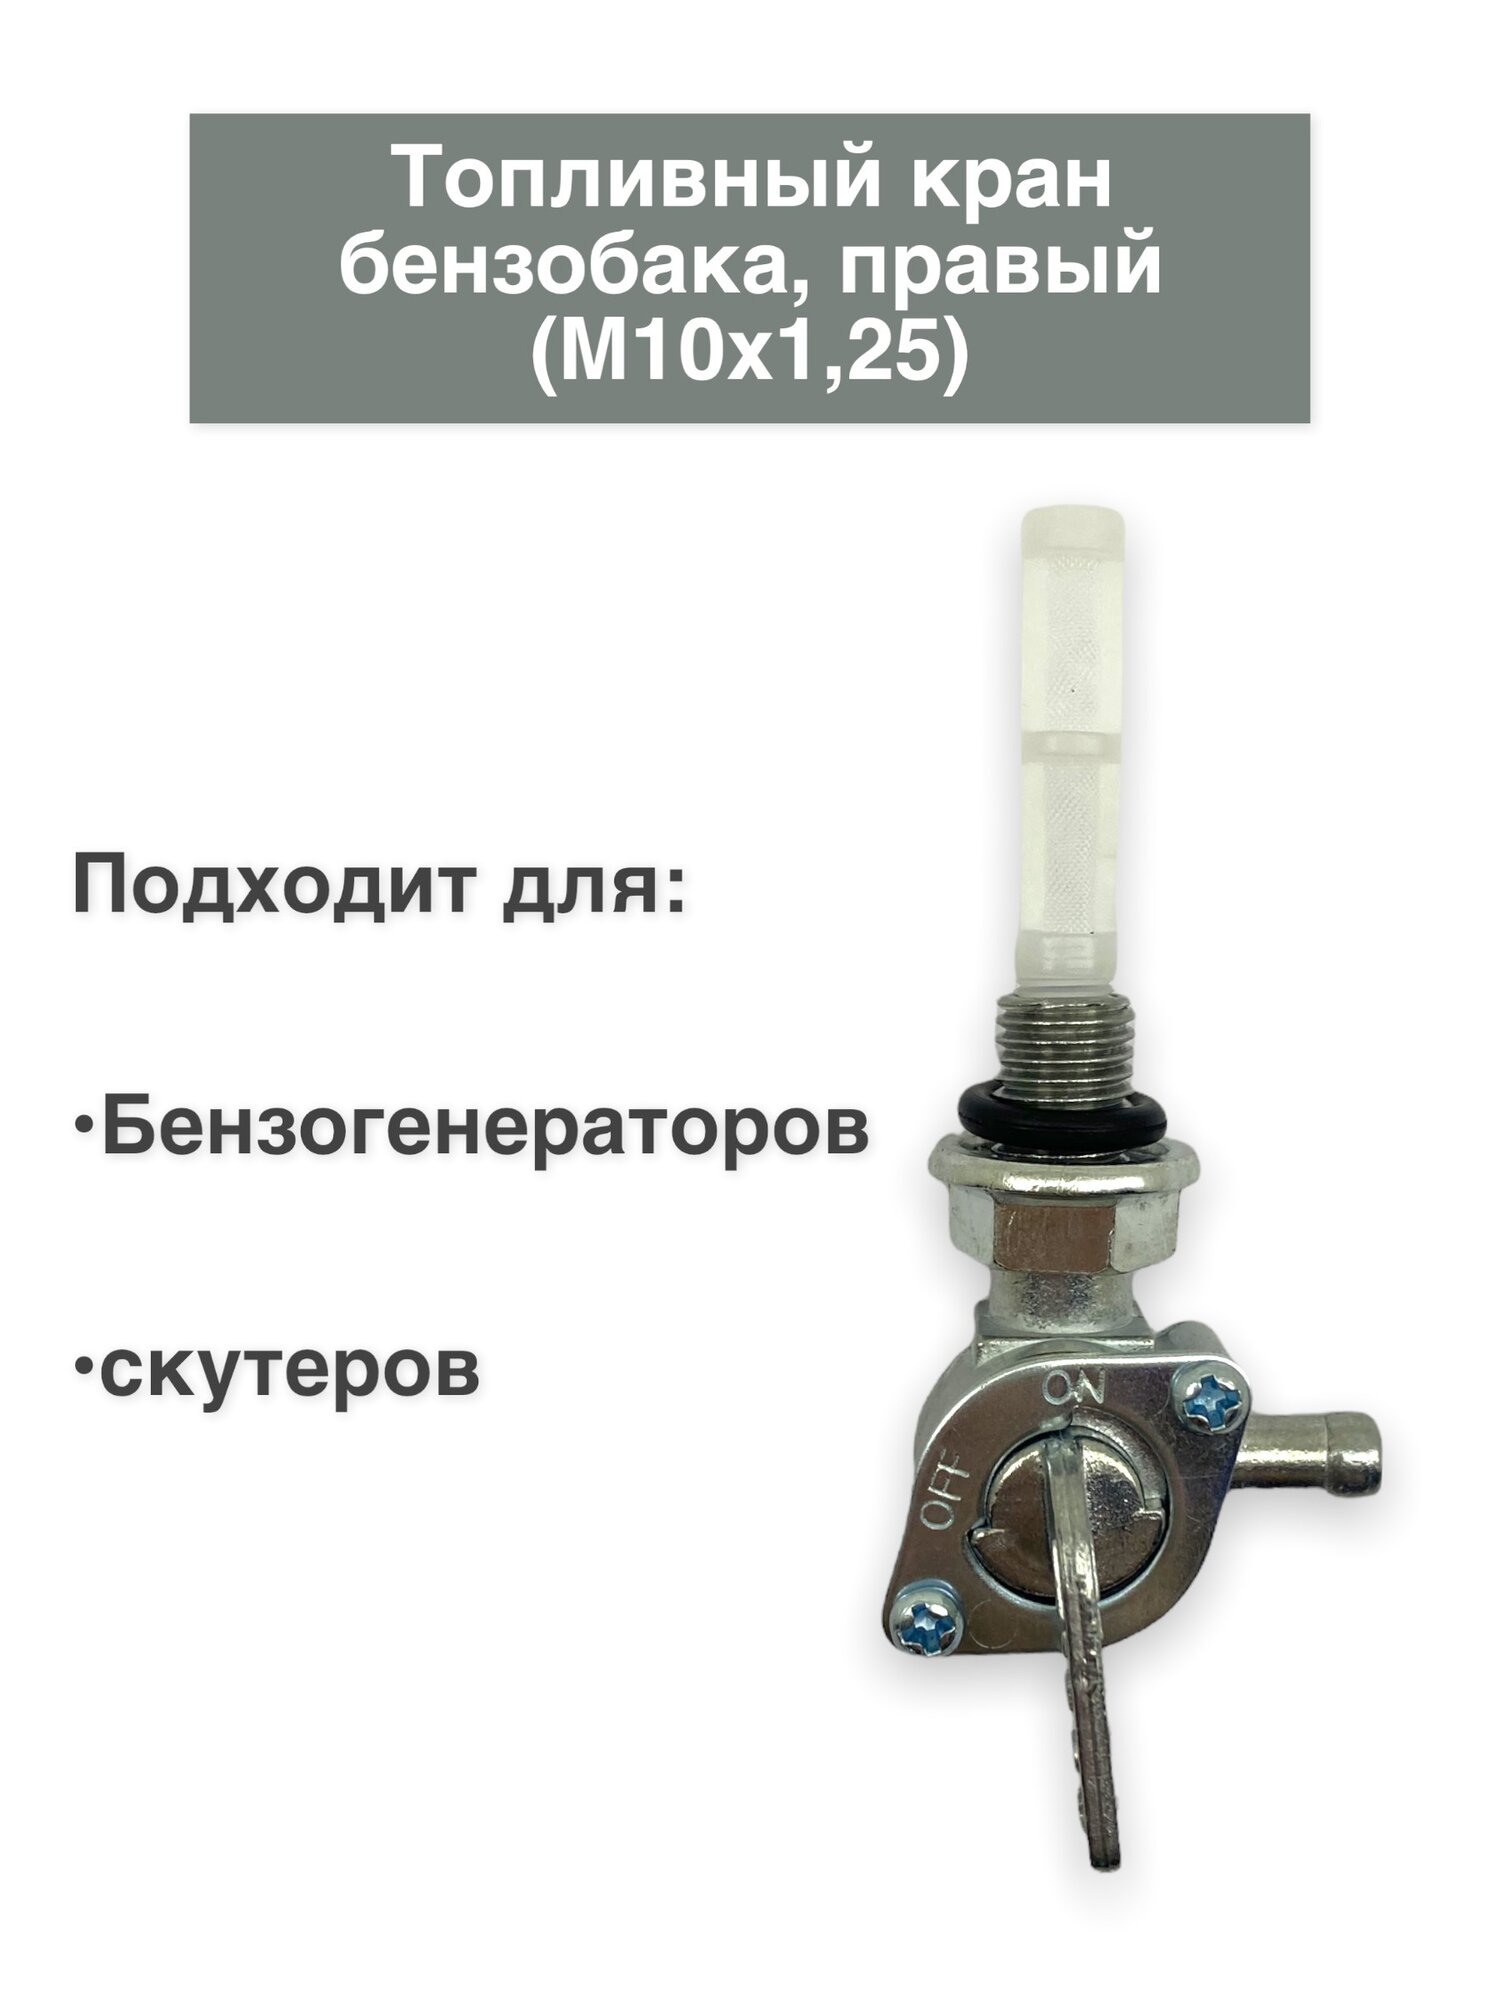 Кран бензобака топливный правый для бензогенераторов и скутеров (M10х125).